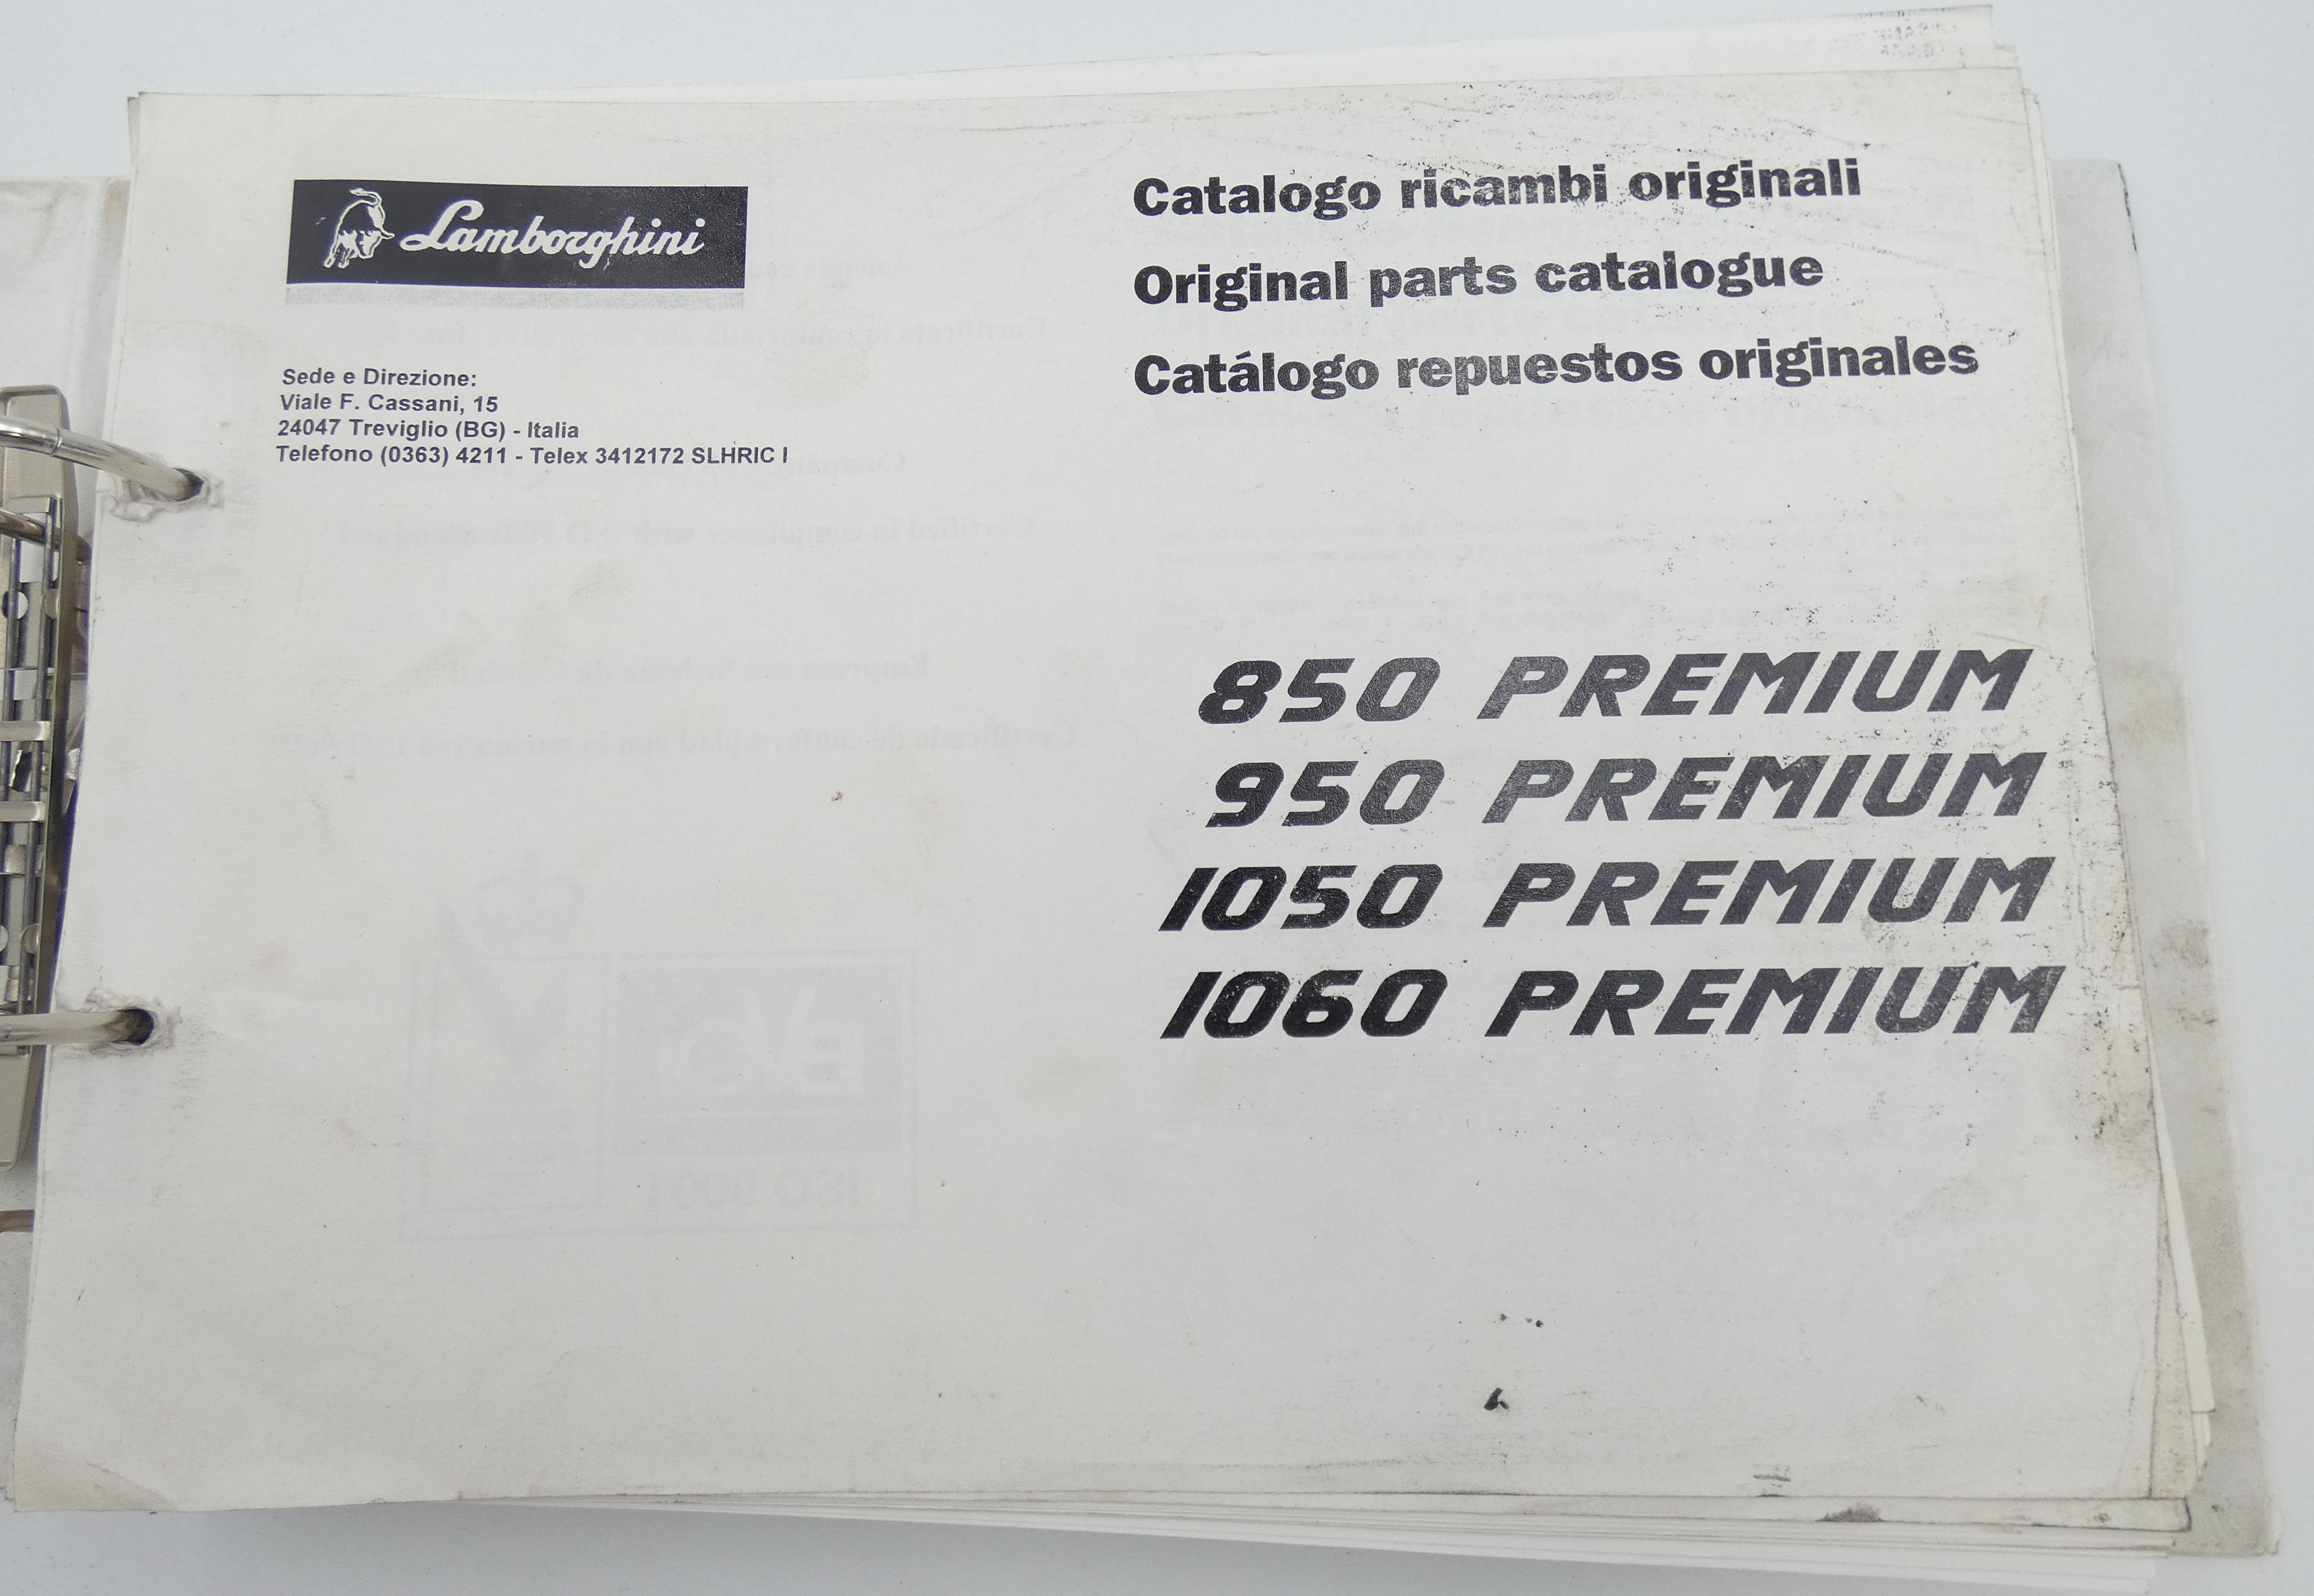 Lamborghini 850, 950, 1050, 1060 Premium original parts catalogue